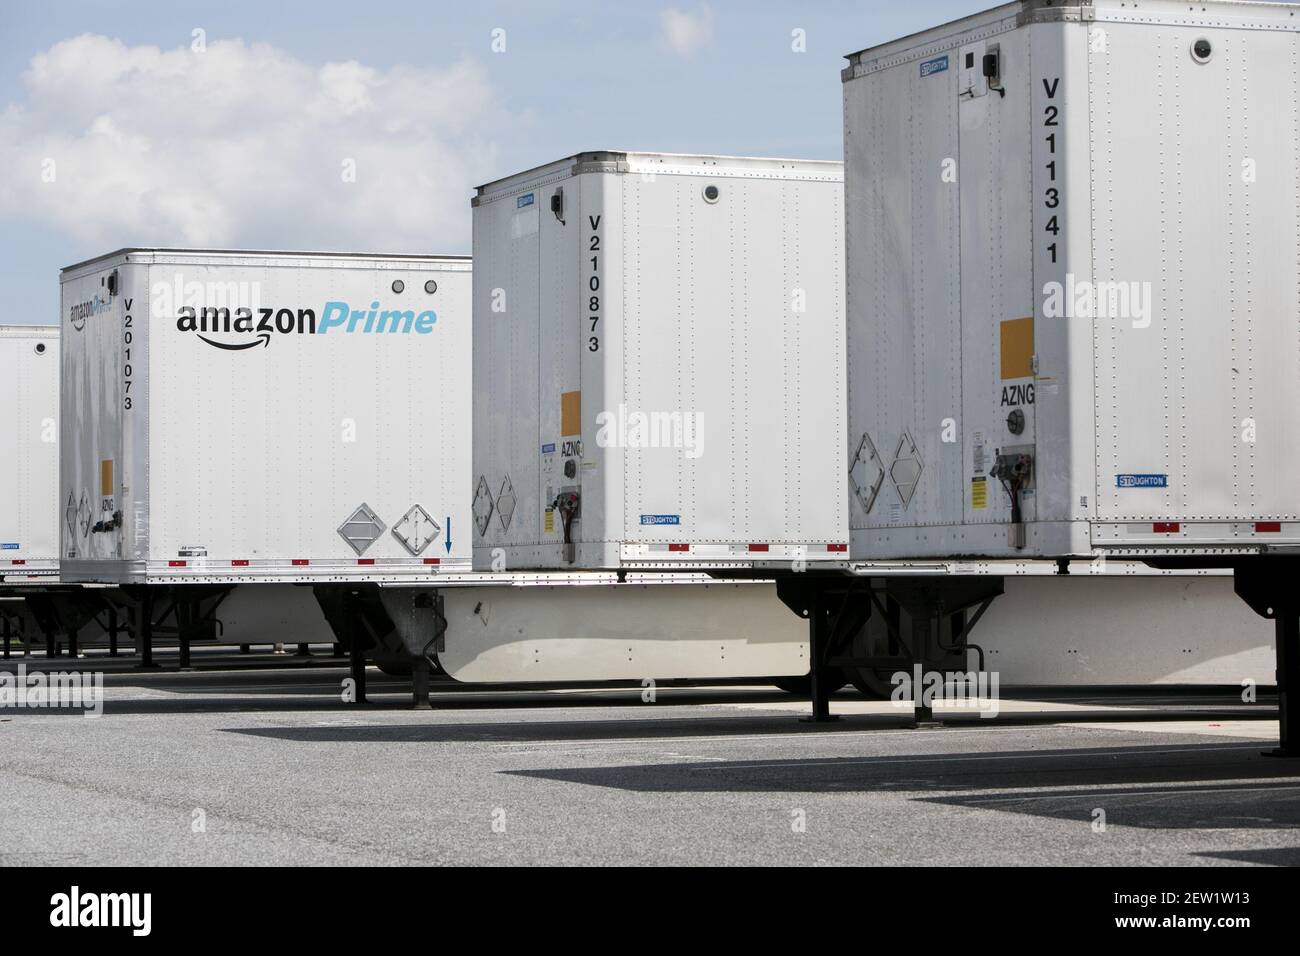 Amazon Prime LKW-Anhänger außerhalb eines Amazon Versandzentrums in  Baltimore, Maryland, am 13. August 2017. Foto von Kristoffer Tripplaar ***  Bitte benutzen Sie Credit from Credit Field *** Stockfotografie - Alamy